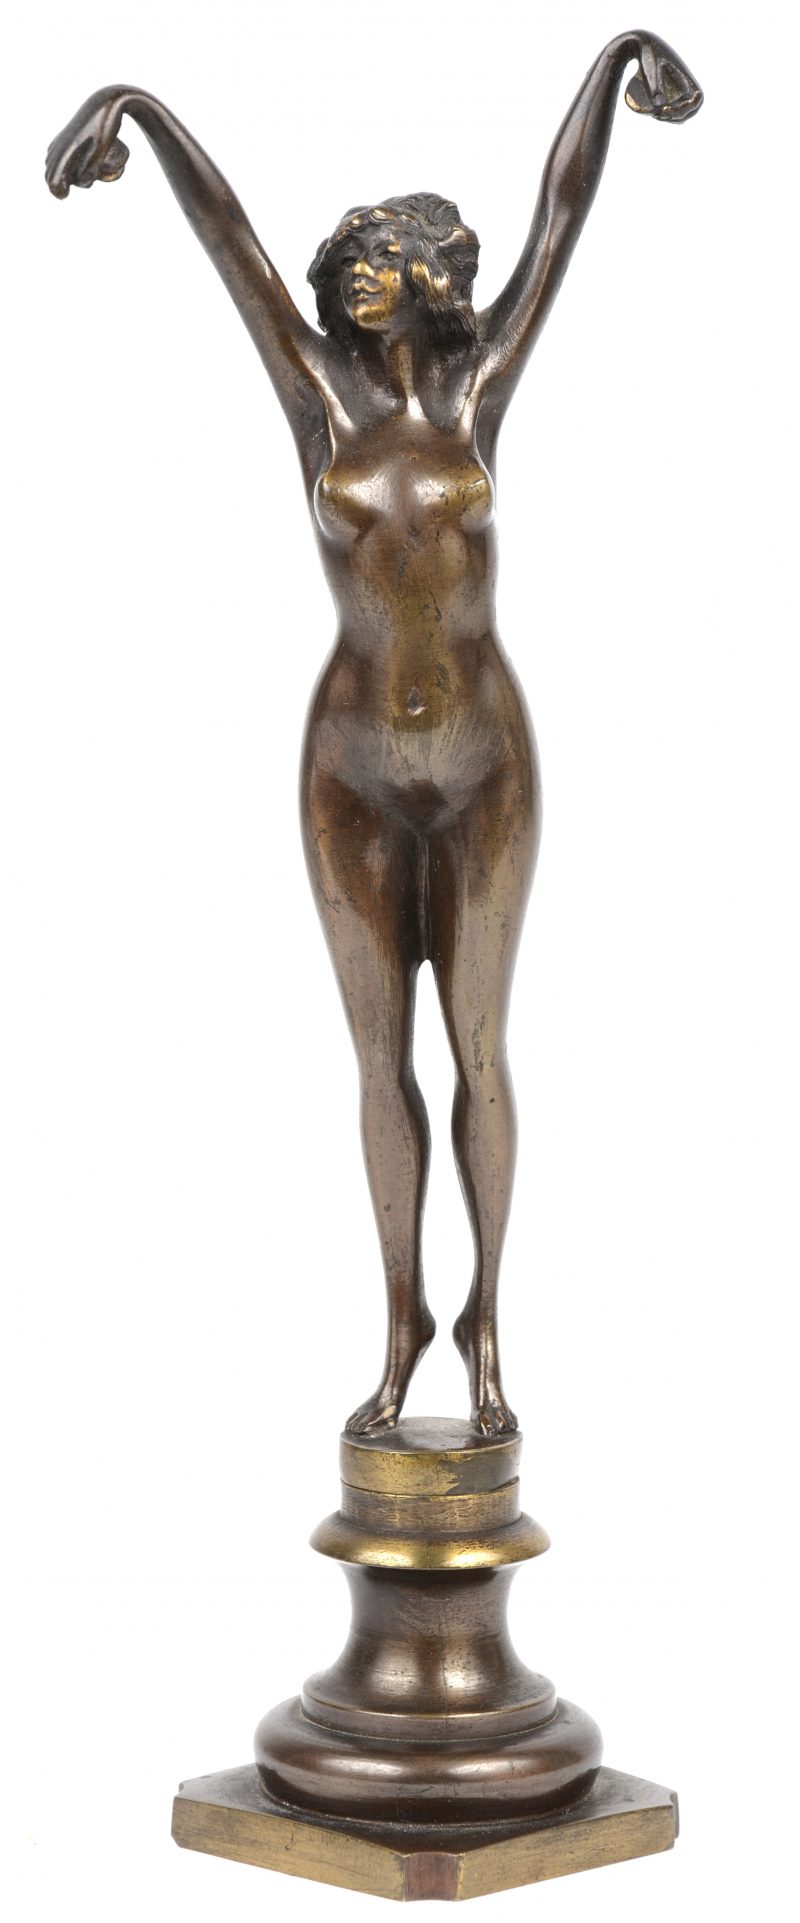 “Dansend naakt”. Een art deco beeldeje van brons.